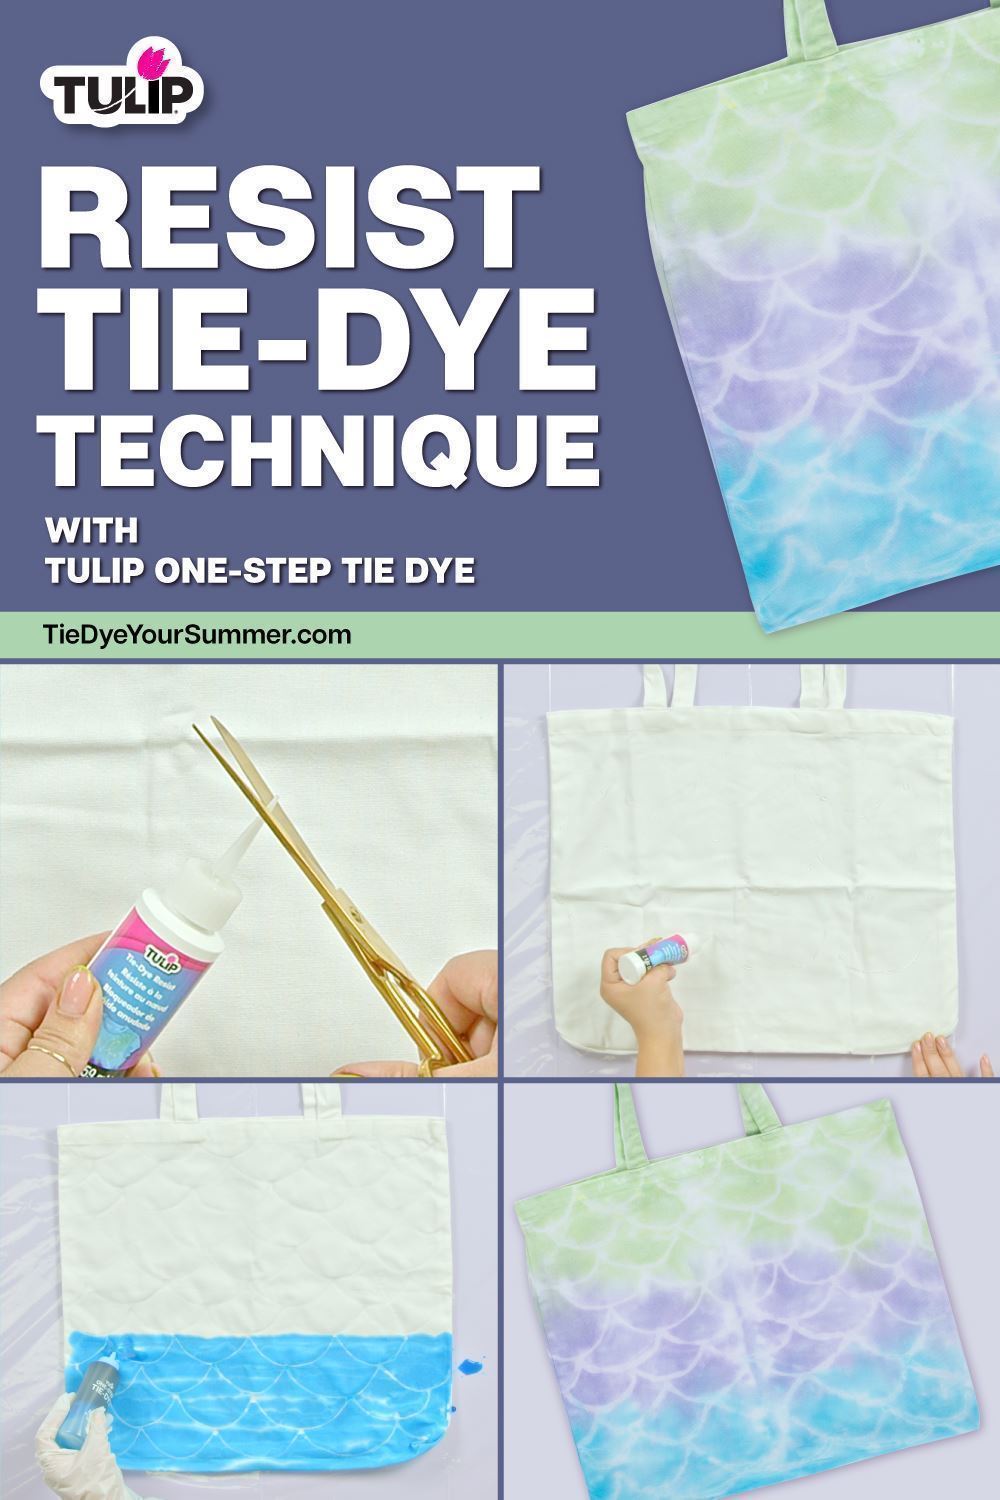 Resist Tie-Dye Technique